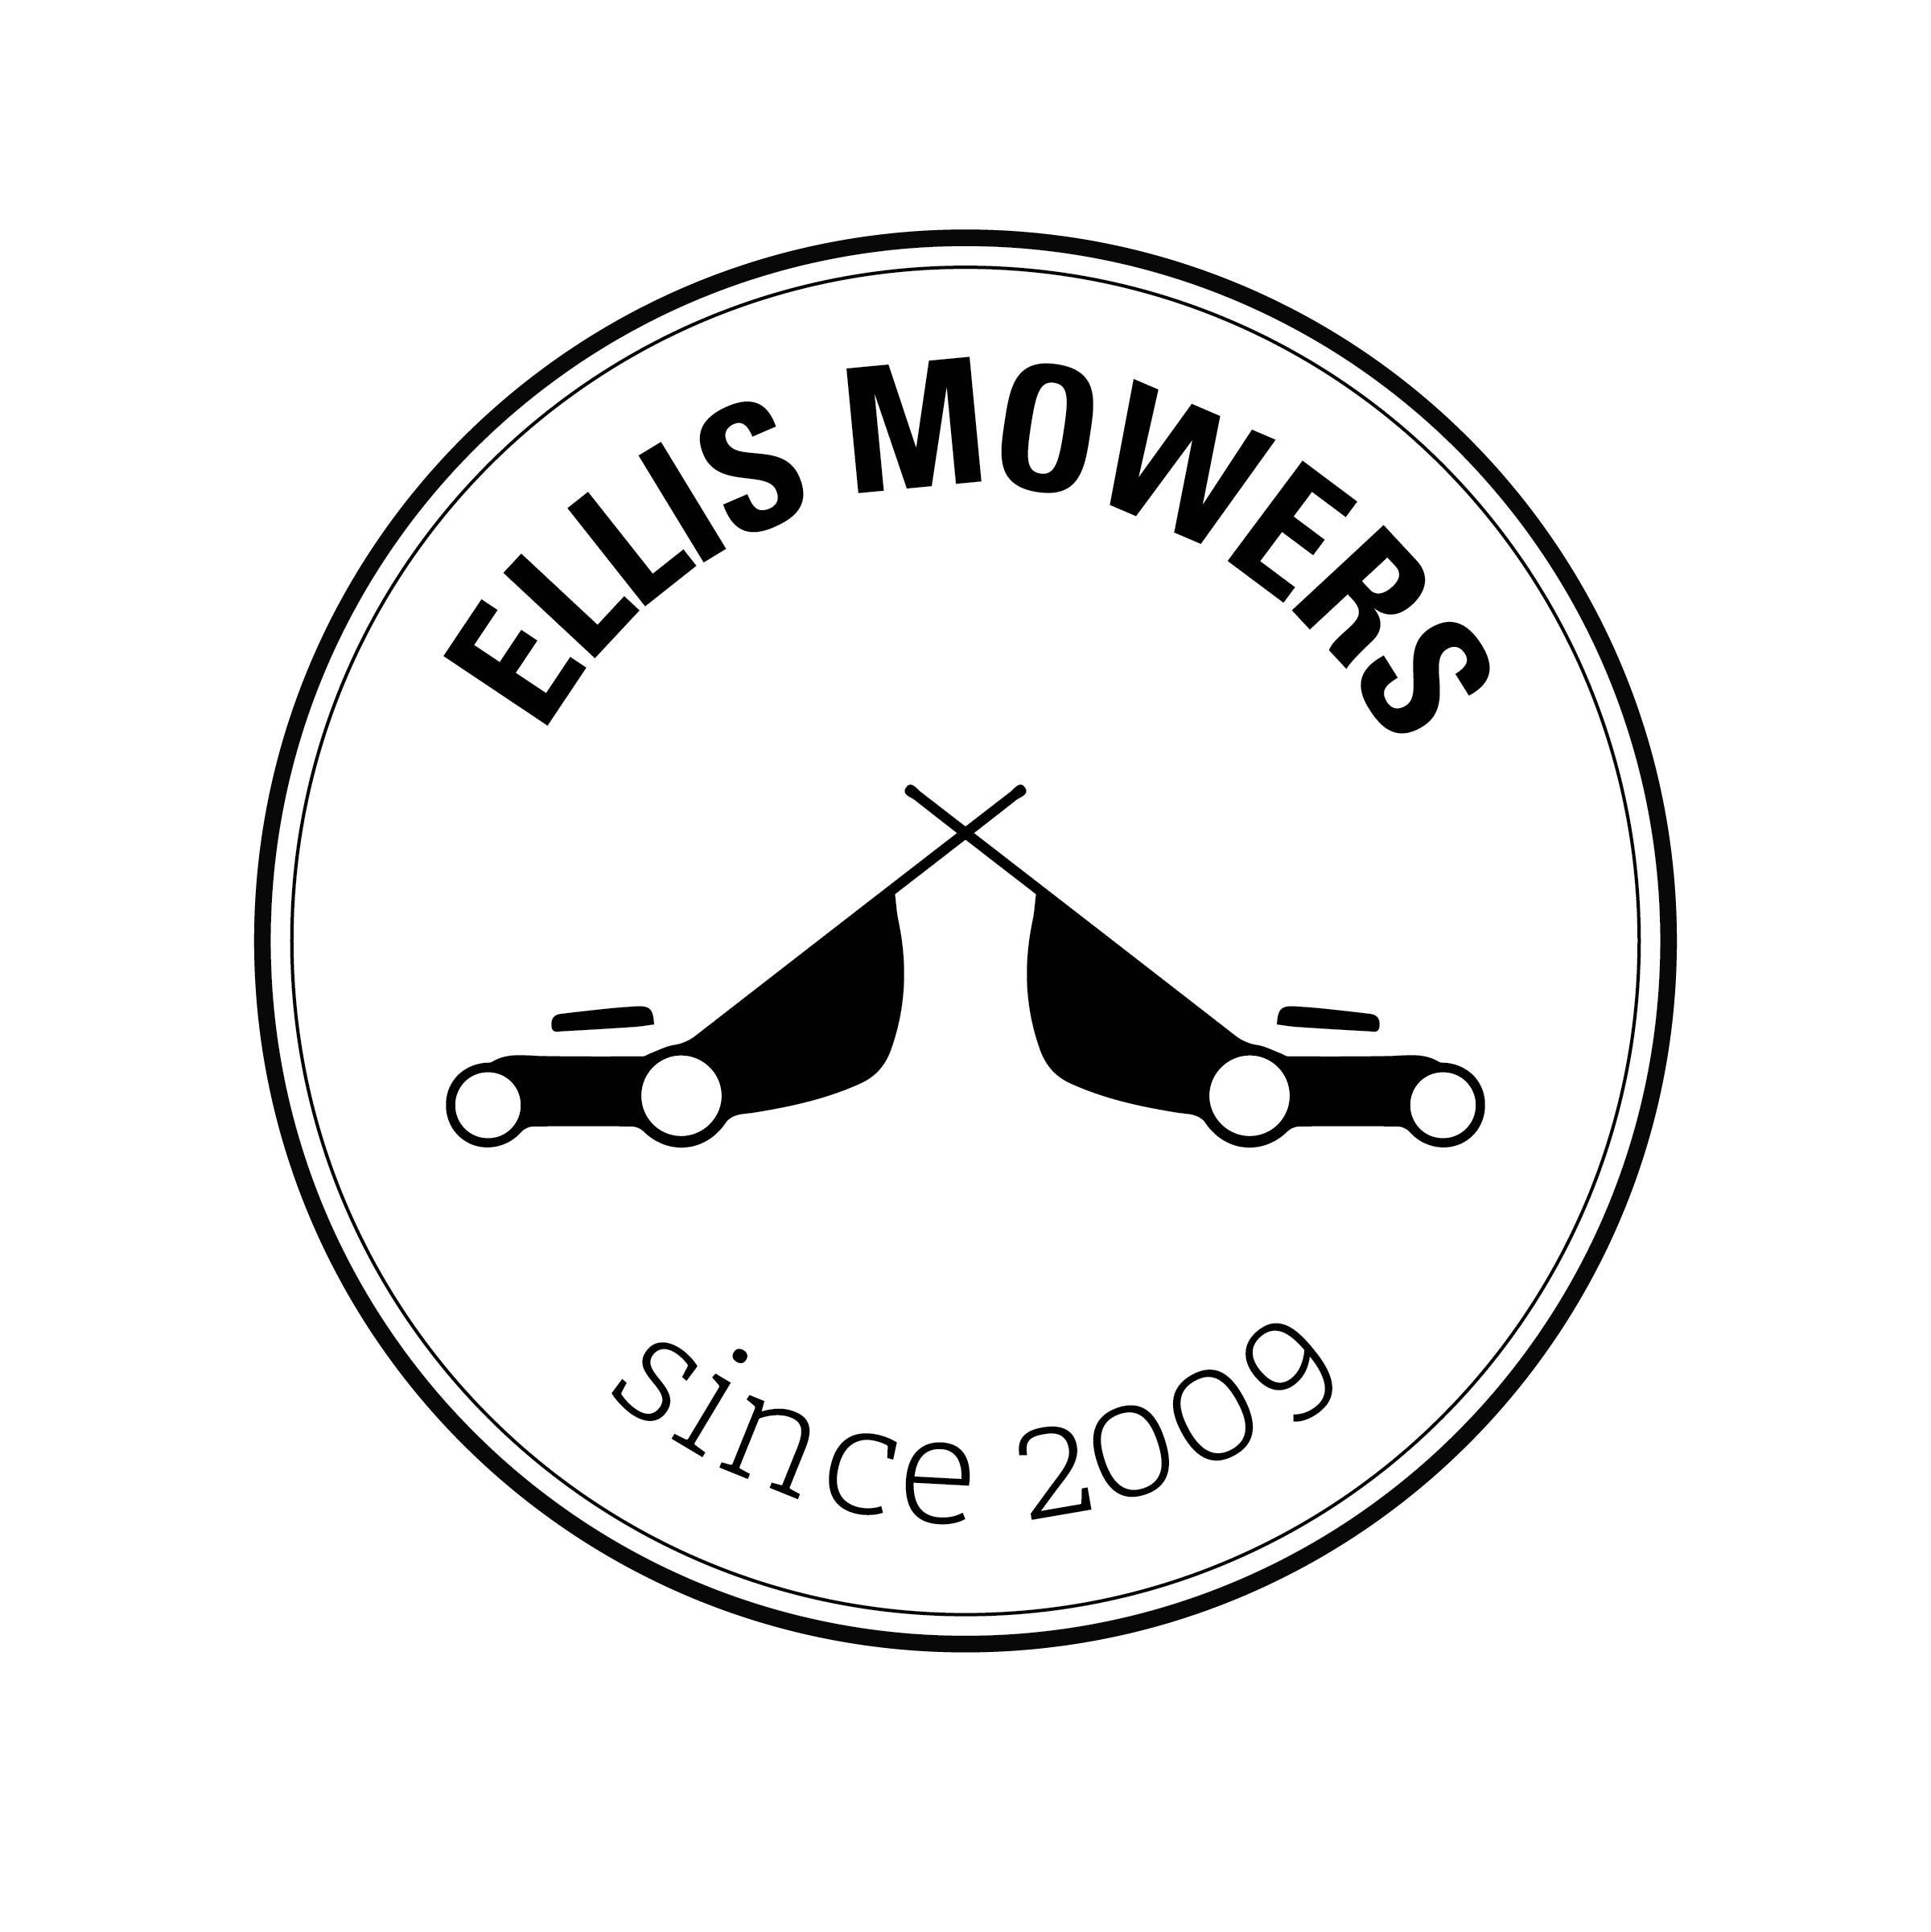 Ellis Mowers business card-08.jpg